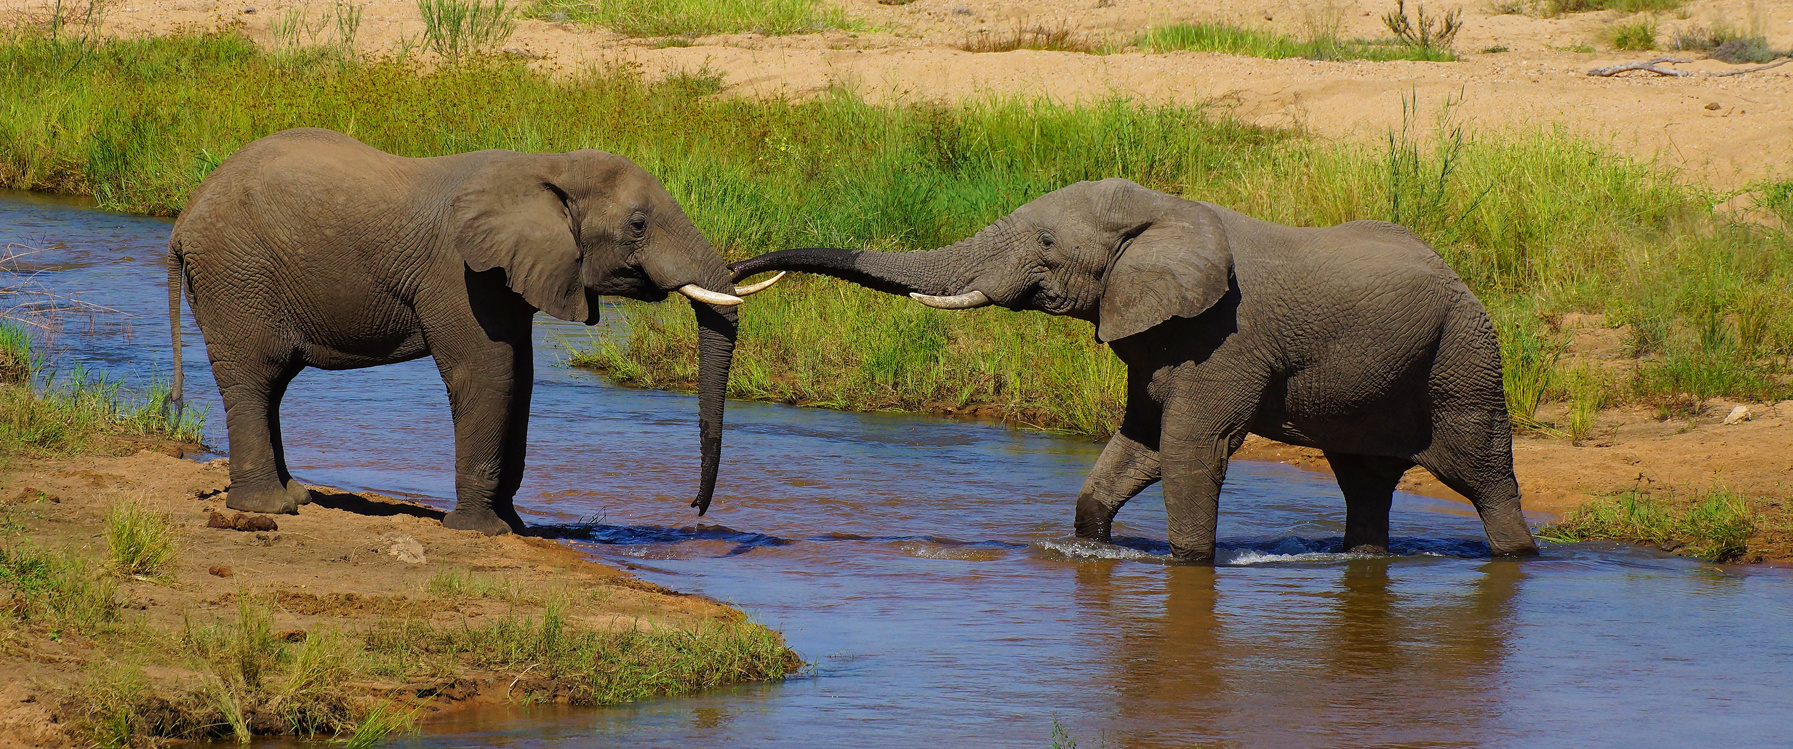 Elephants, Sand river, Kruger NP